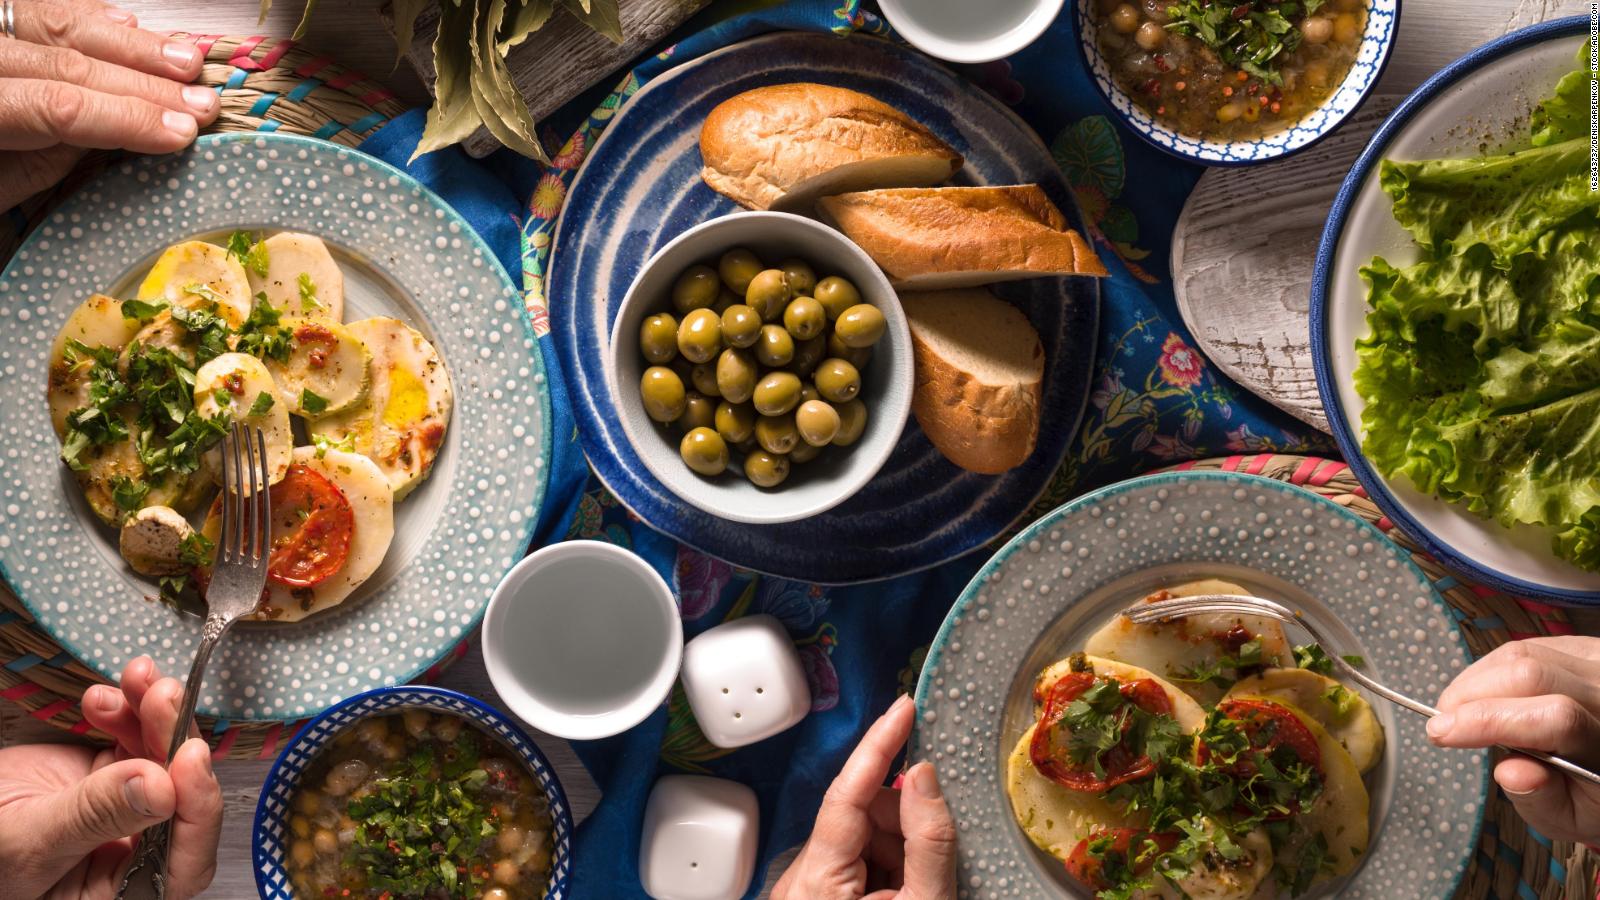 La dieta mediterránea, una vez más, elegida como la más saludable | Video |  CNN